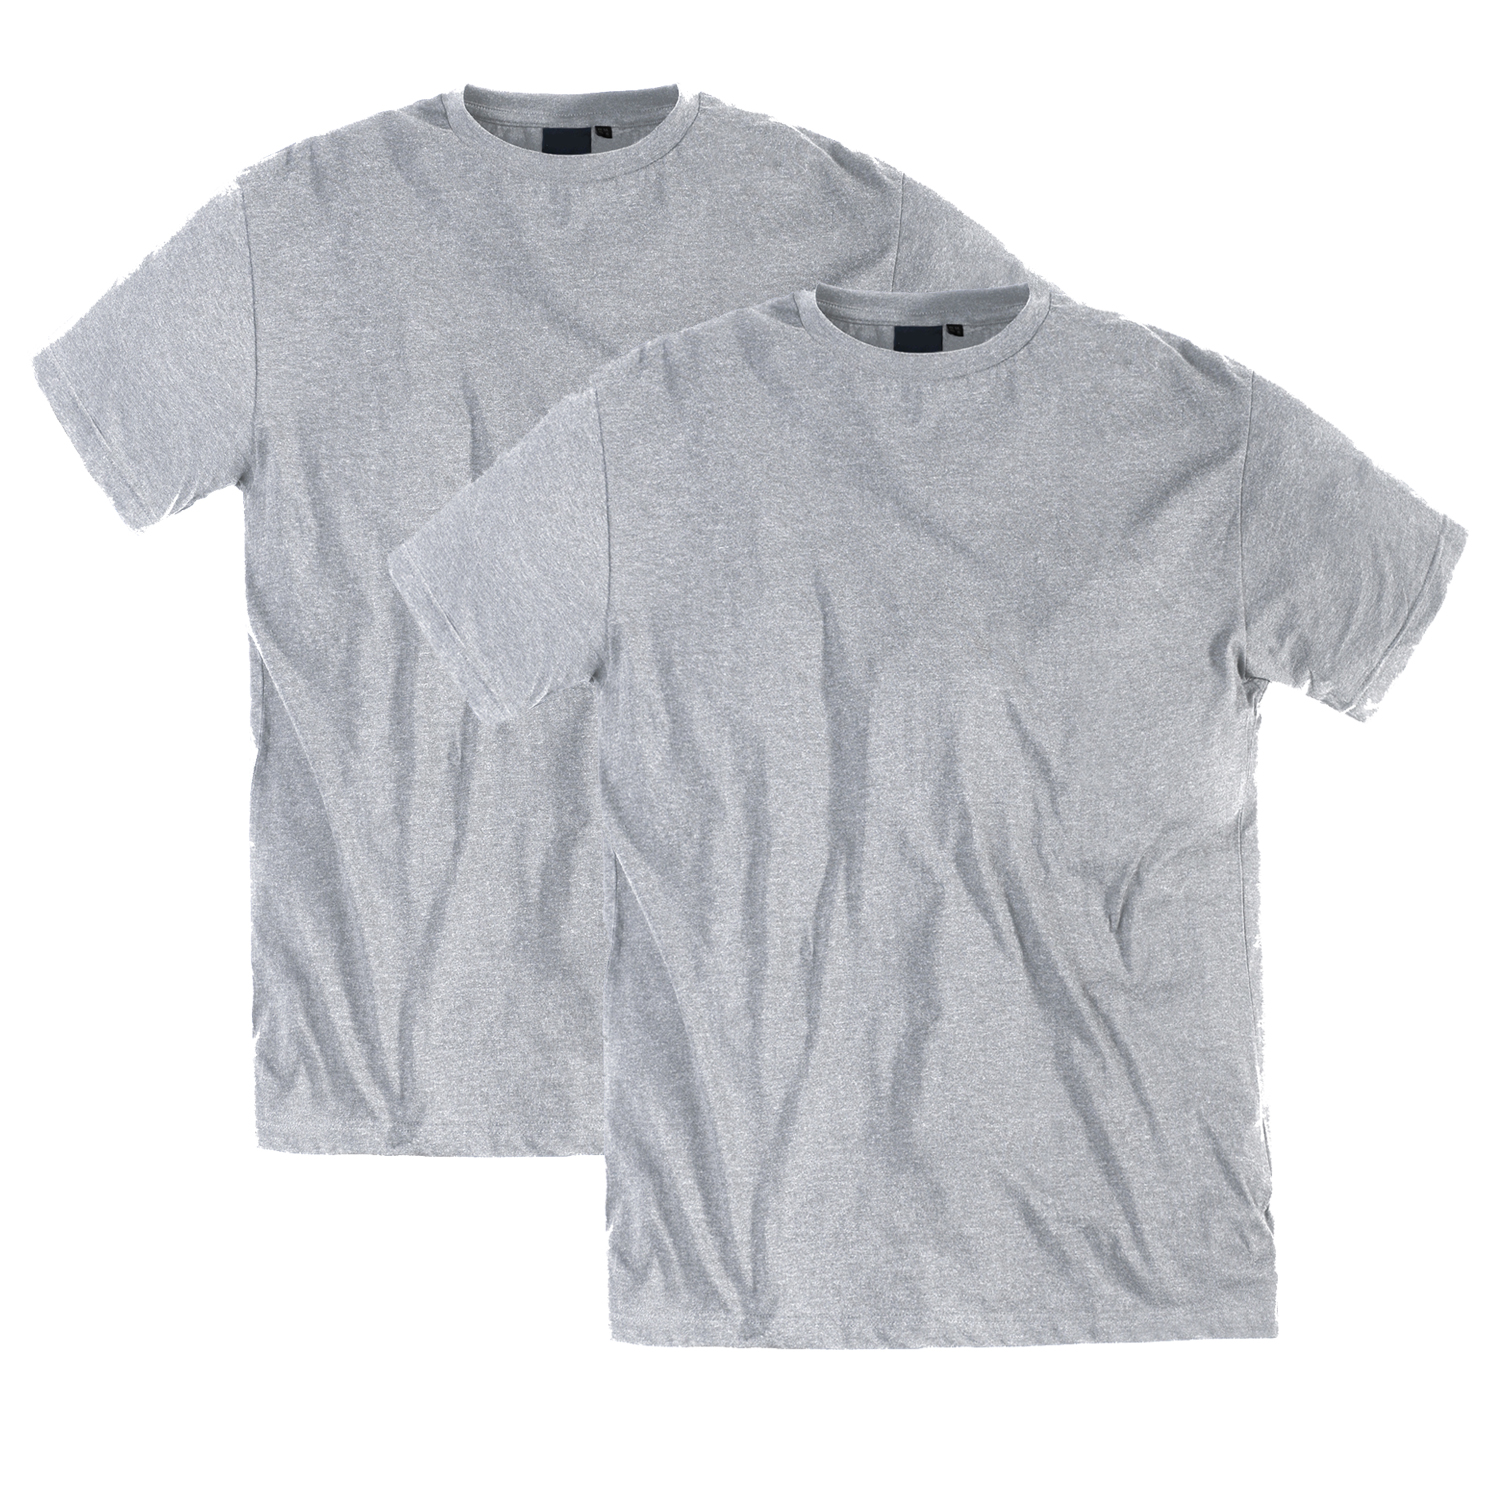 Übergrößen T-Shirt für Männer in graumeliert von Replika bis 8XL im 2er Pack